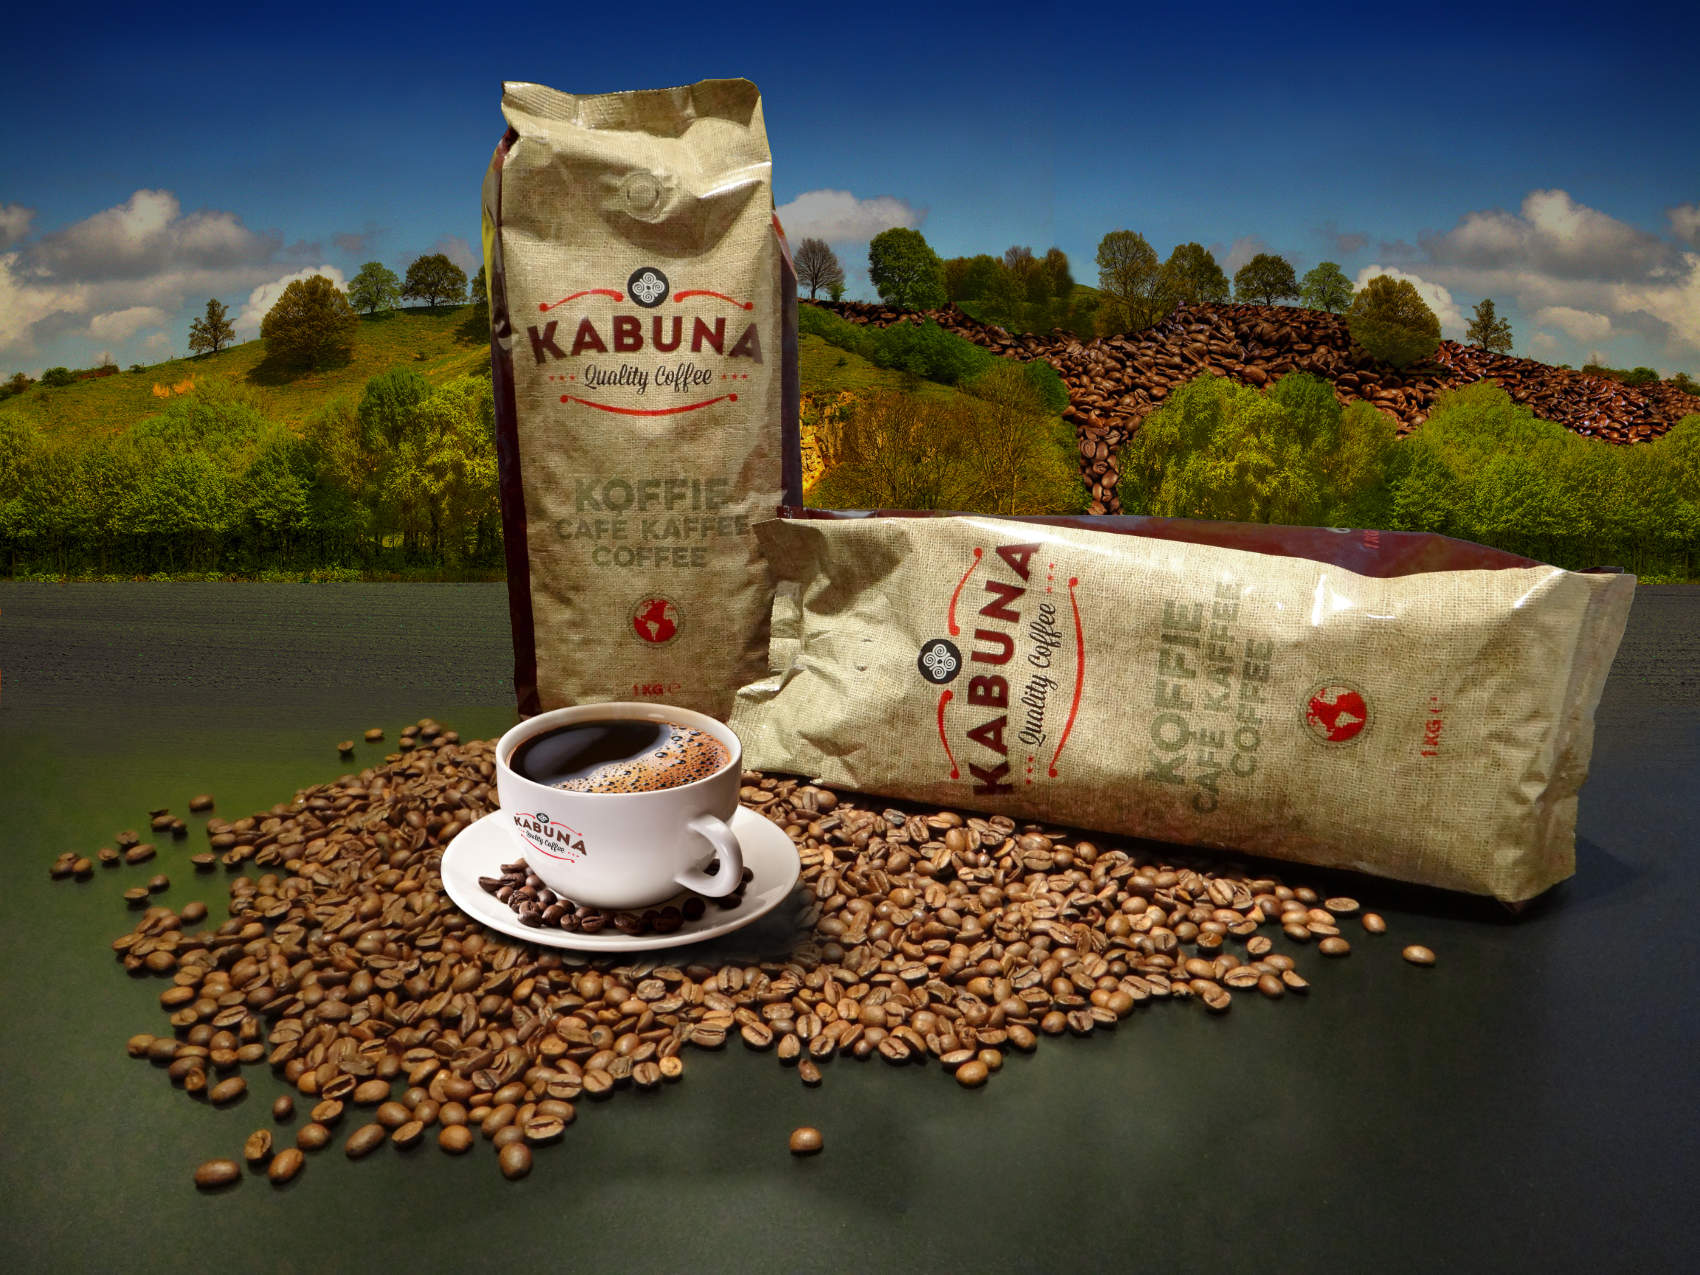 Kabuna koffie verpakking - Rene Verkaart)